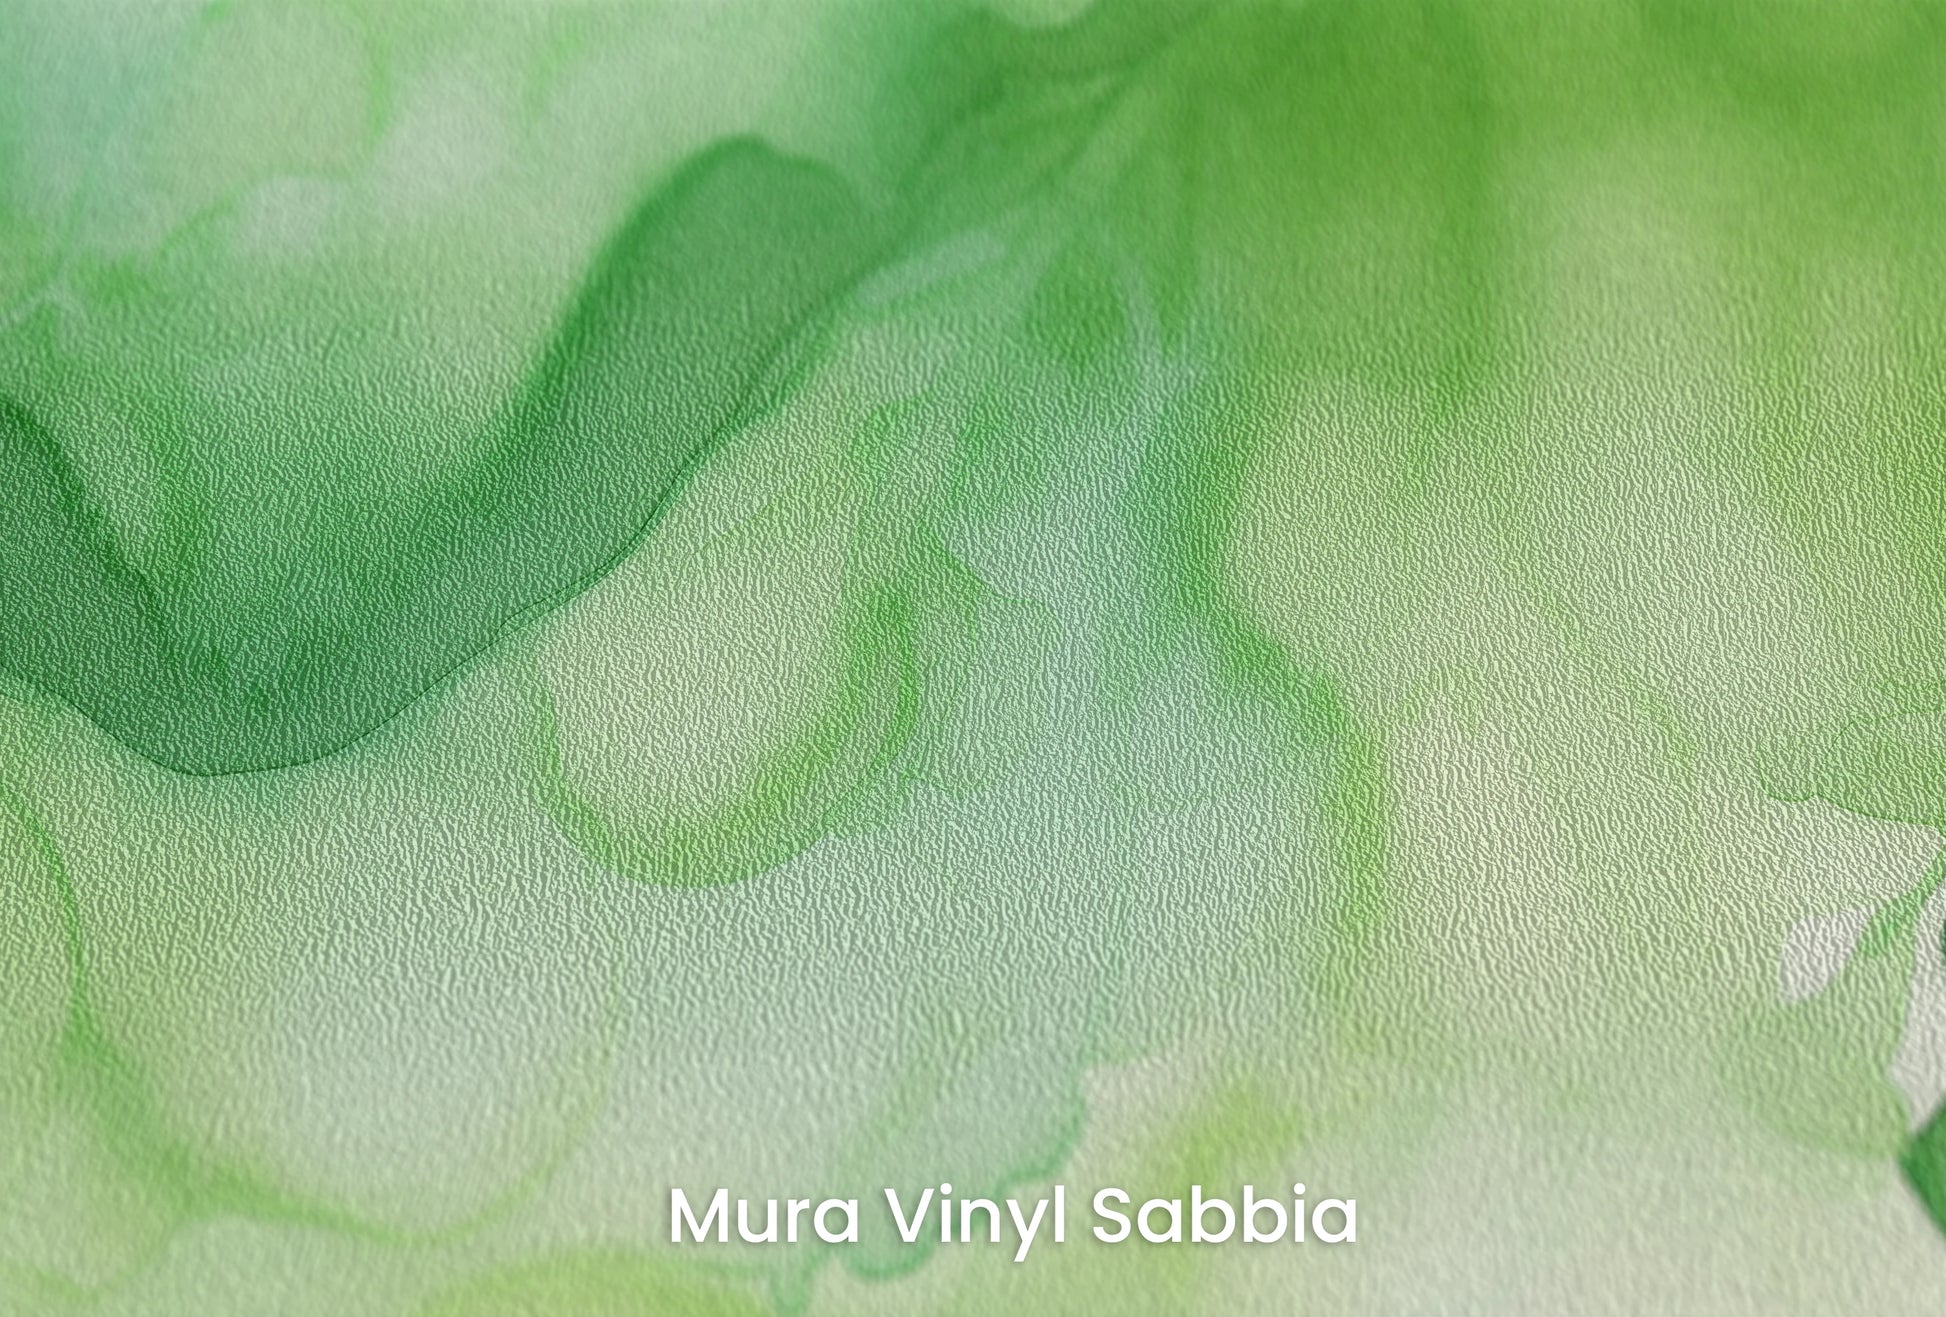 Zbliżenie na artystyczną fototapetę o nazwie Zielona Fantazja na podłożu Mura Vinyl Sabbia struktura grubego ziarna piasku.